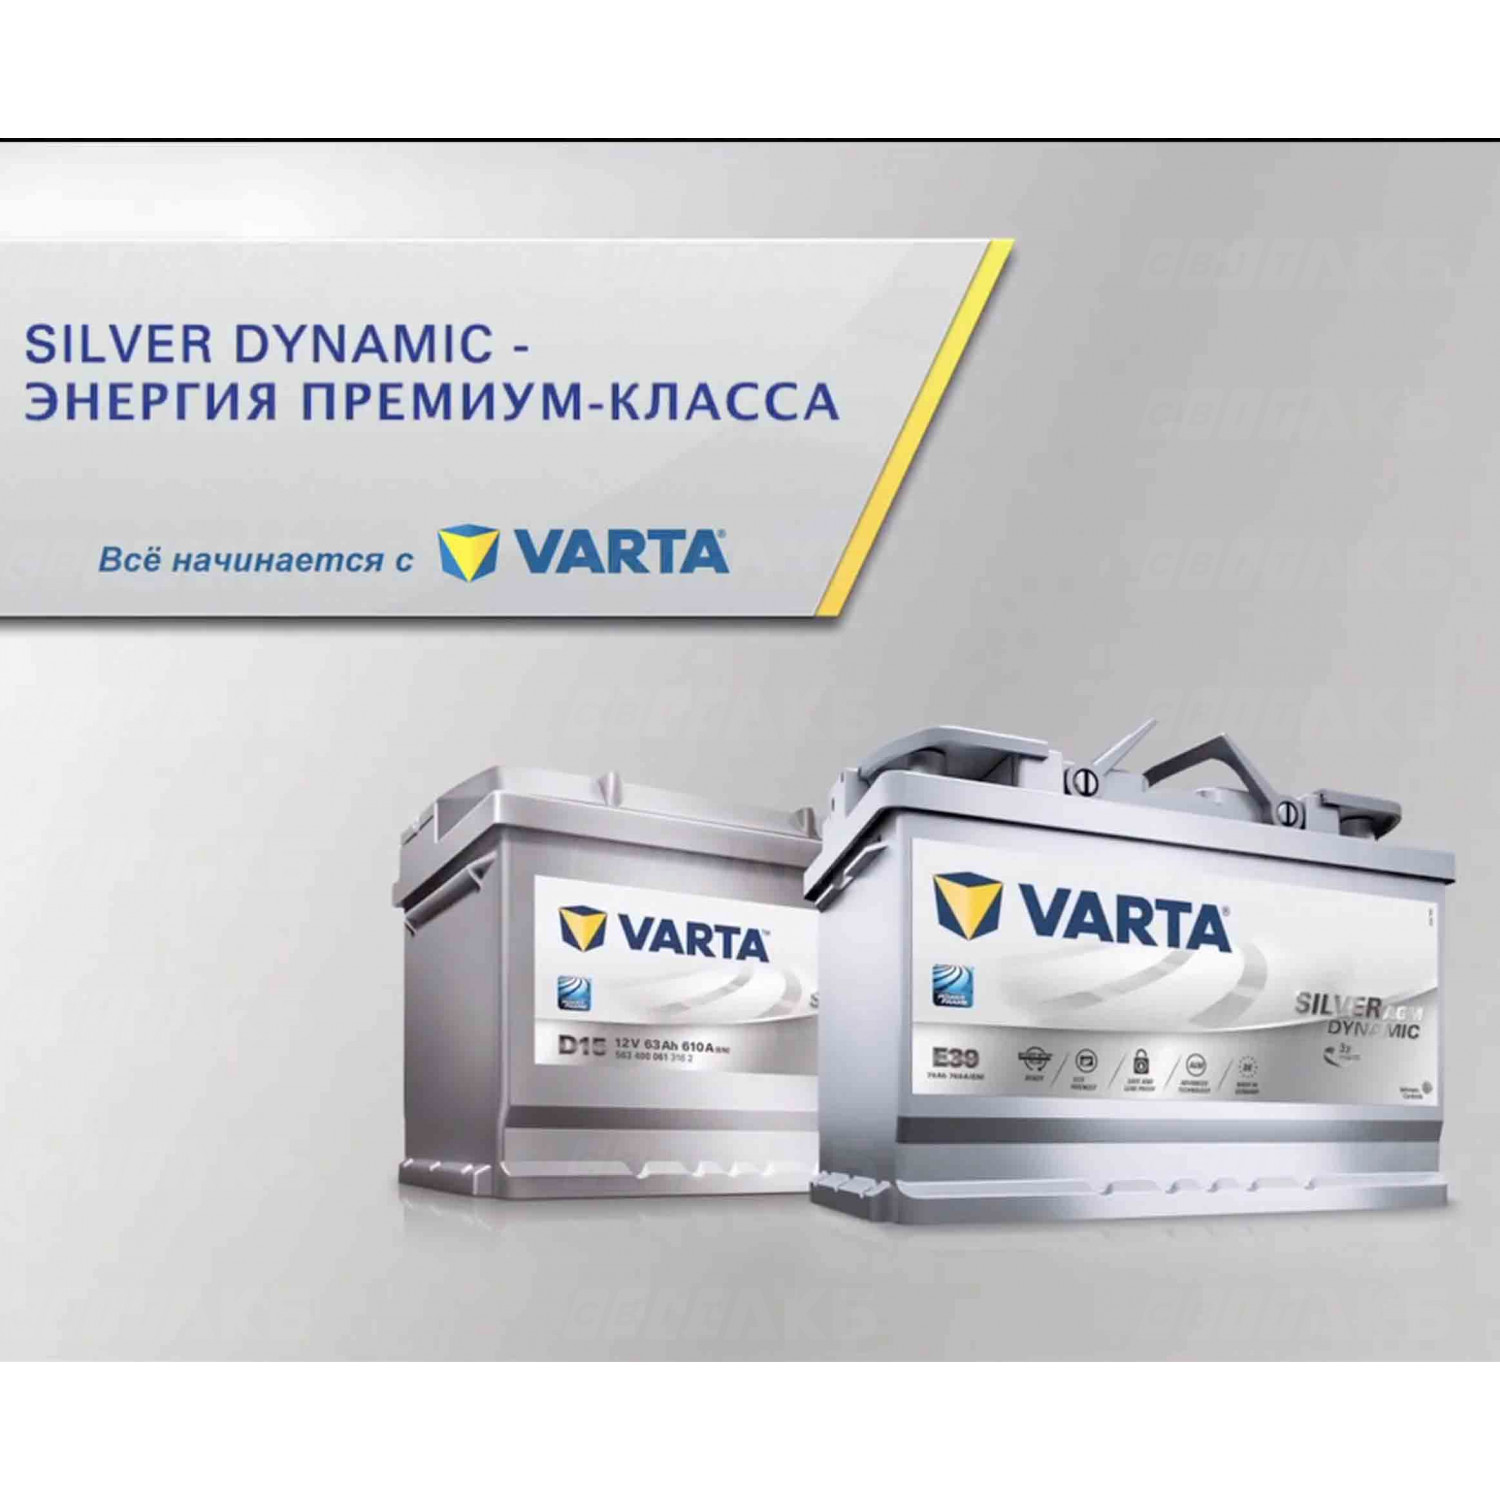 Аккумулятор Varta 80Ah 800A Silver Dynamic AGM F21 купить